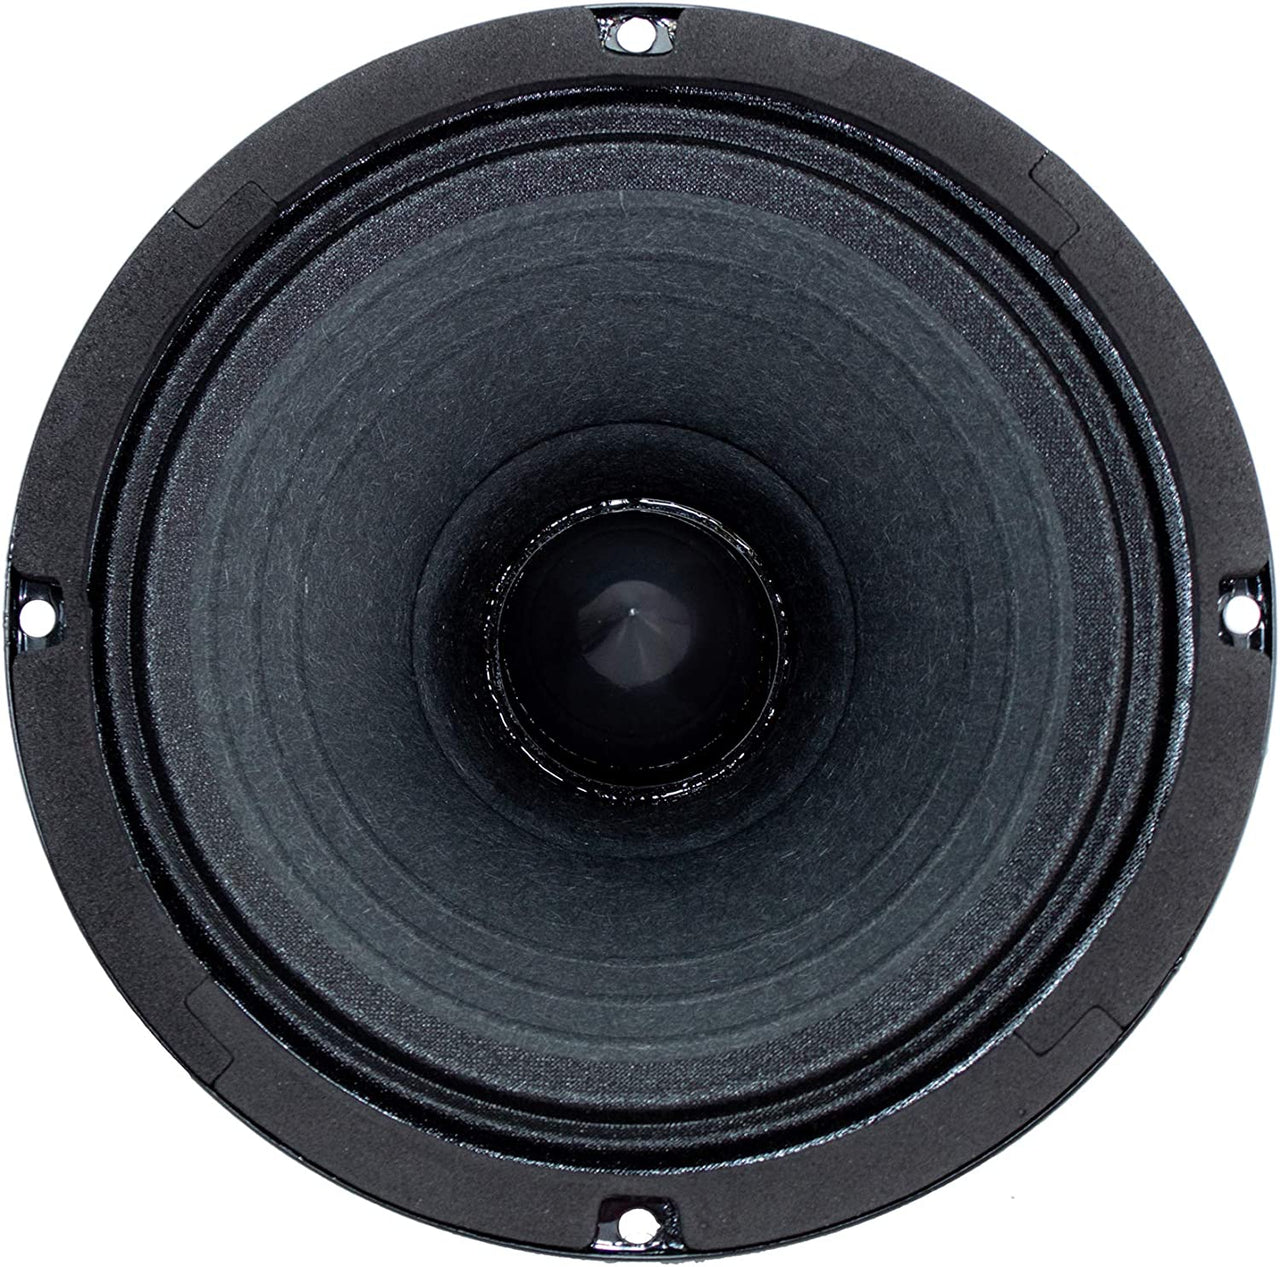 2 MID-65 6.5" Full Range Speakers & NX-5 Black Bullet Super Tweeters